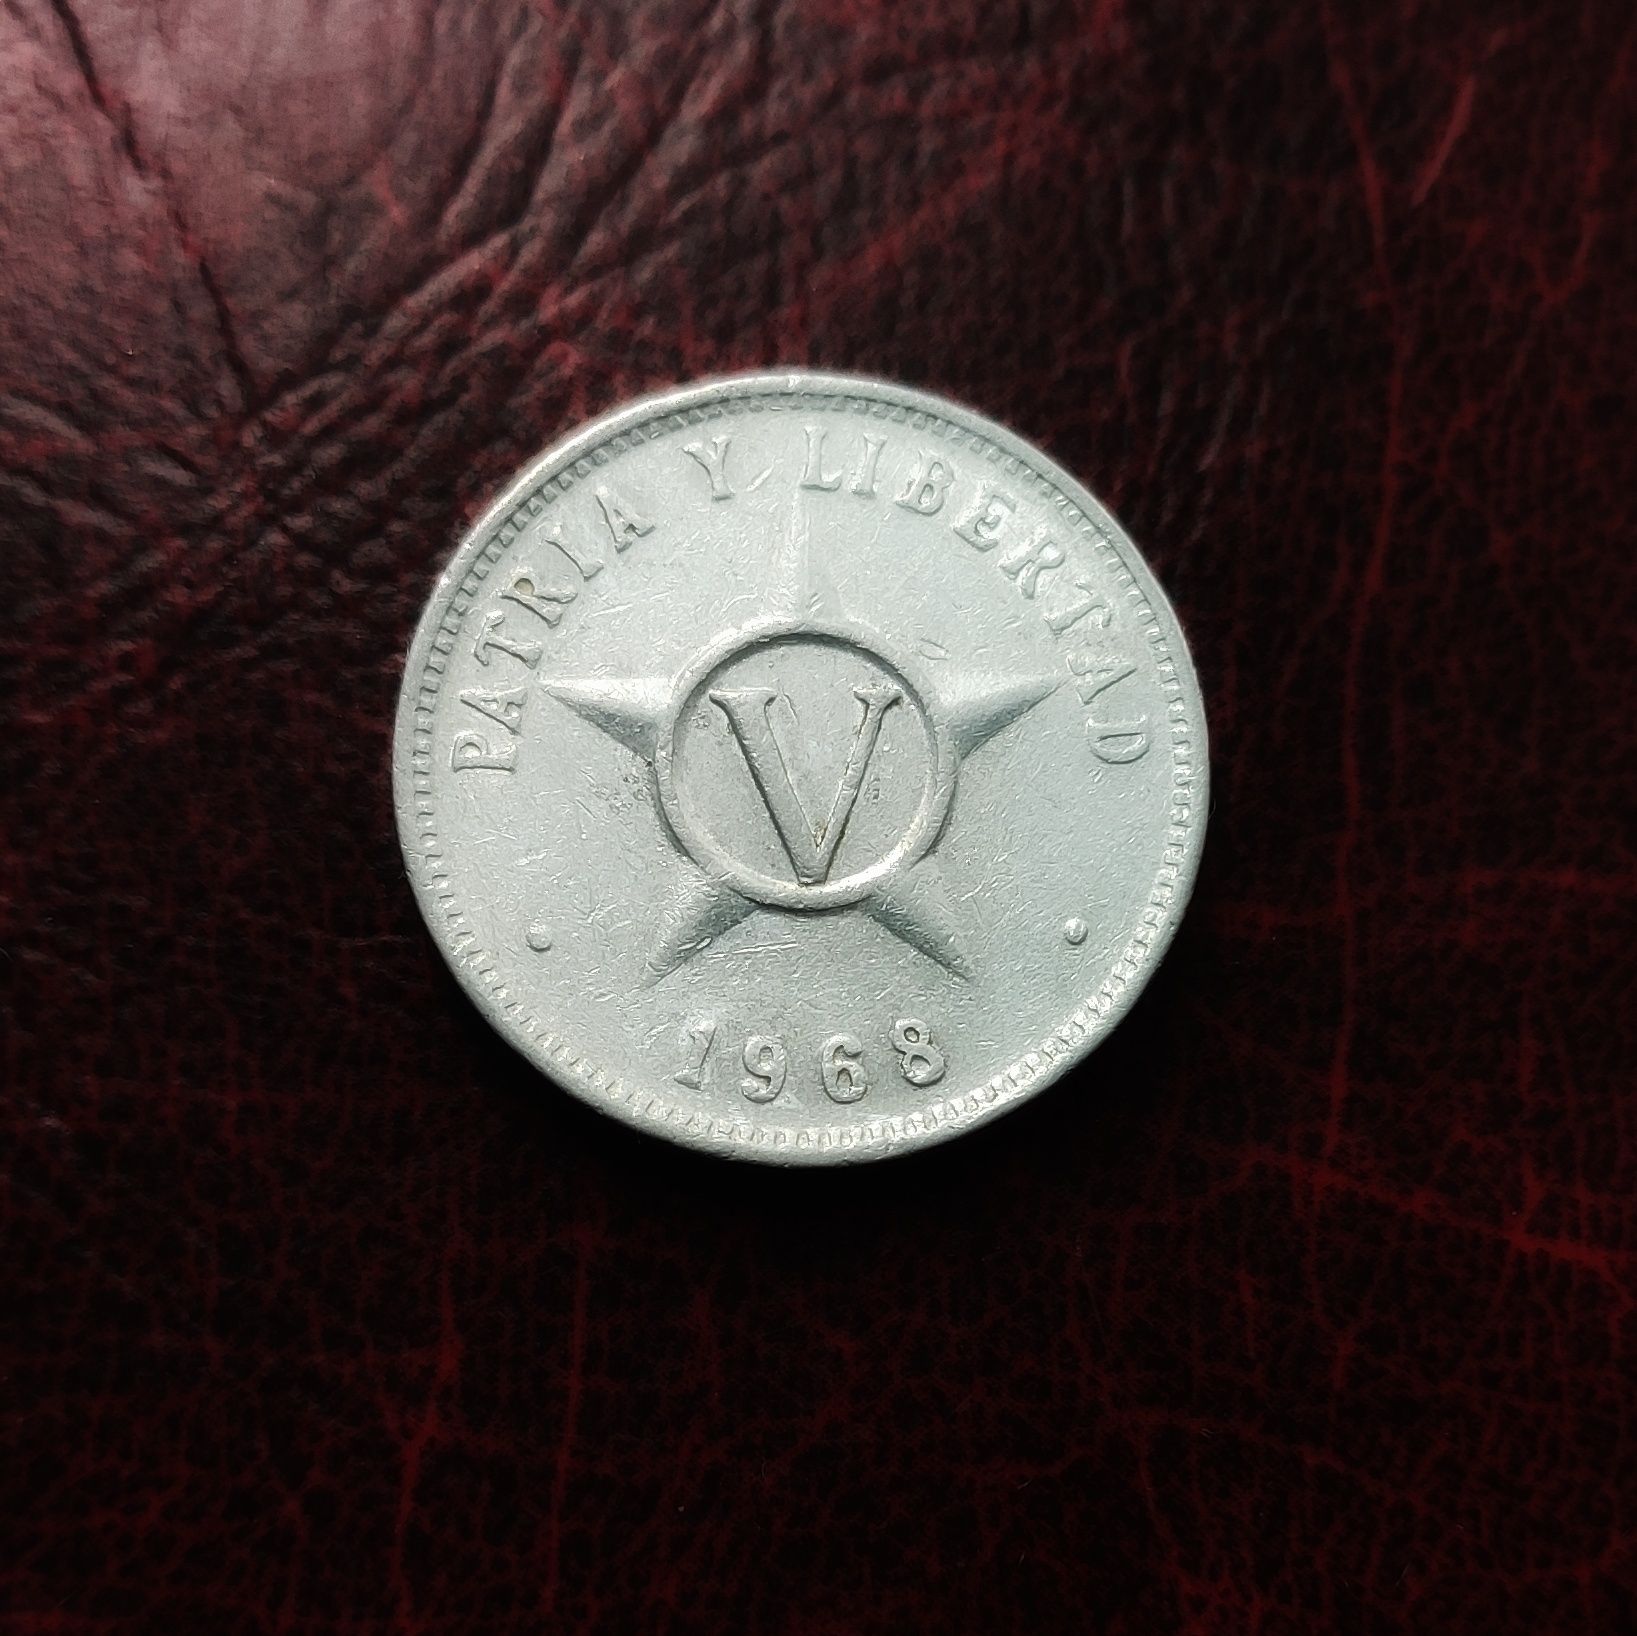 5 Centów z 1968 roku - Kuba